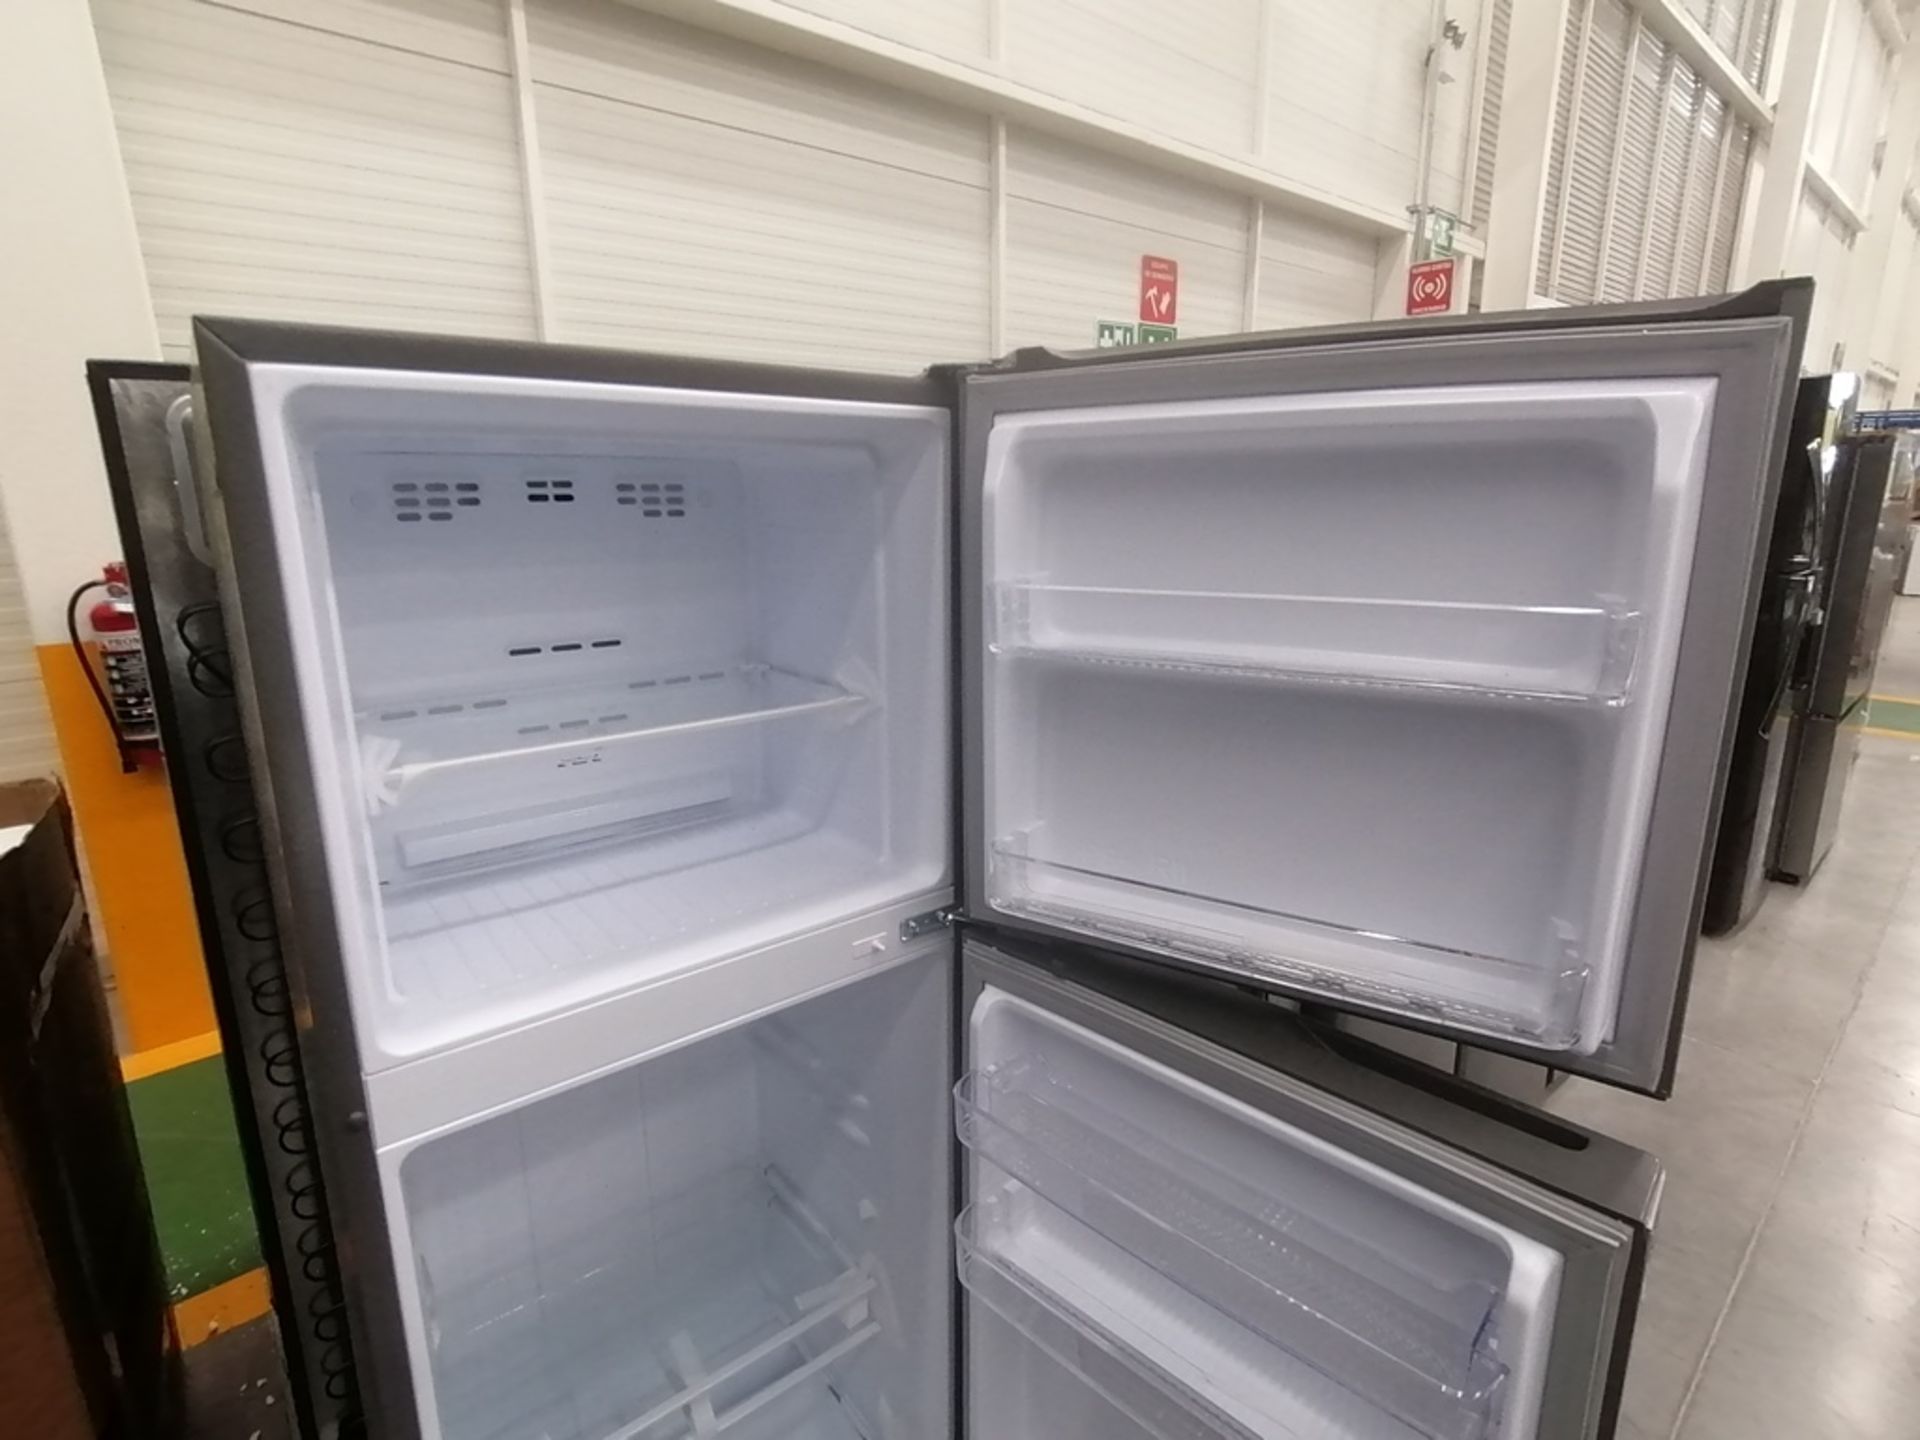 Lote de 2 refrigeradores incluye: 1 Refrigerador con dispensador de agua, Marca Whirlpool, Modelo W - Image 12 of 15